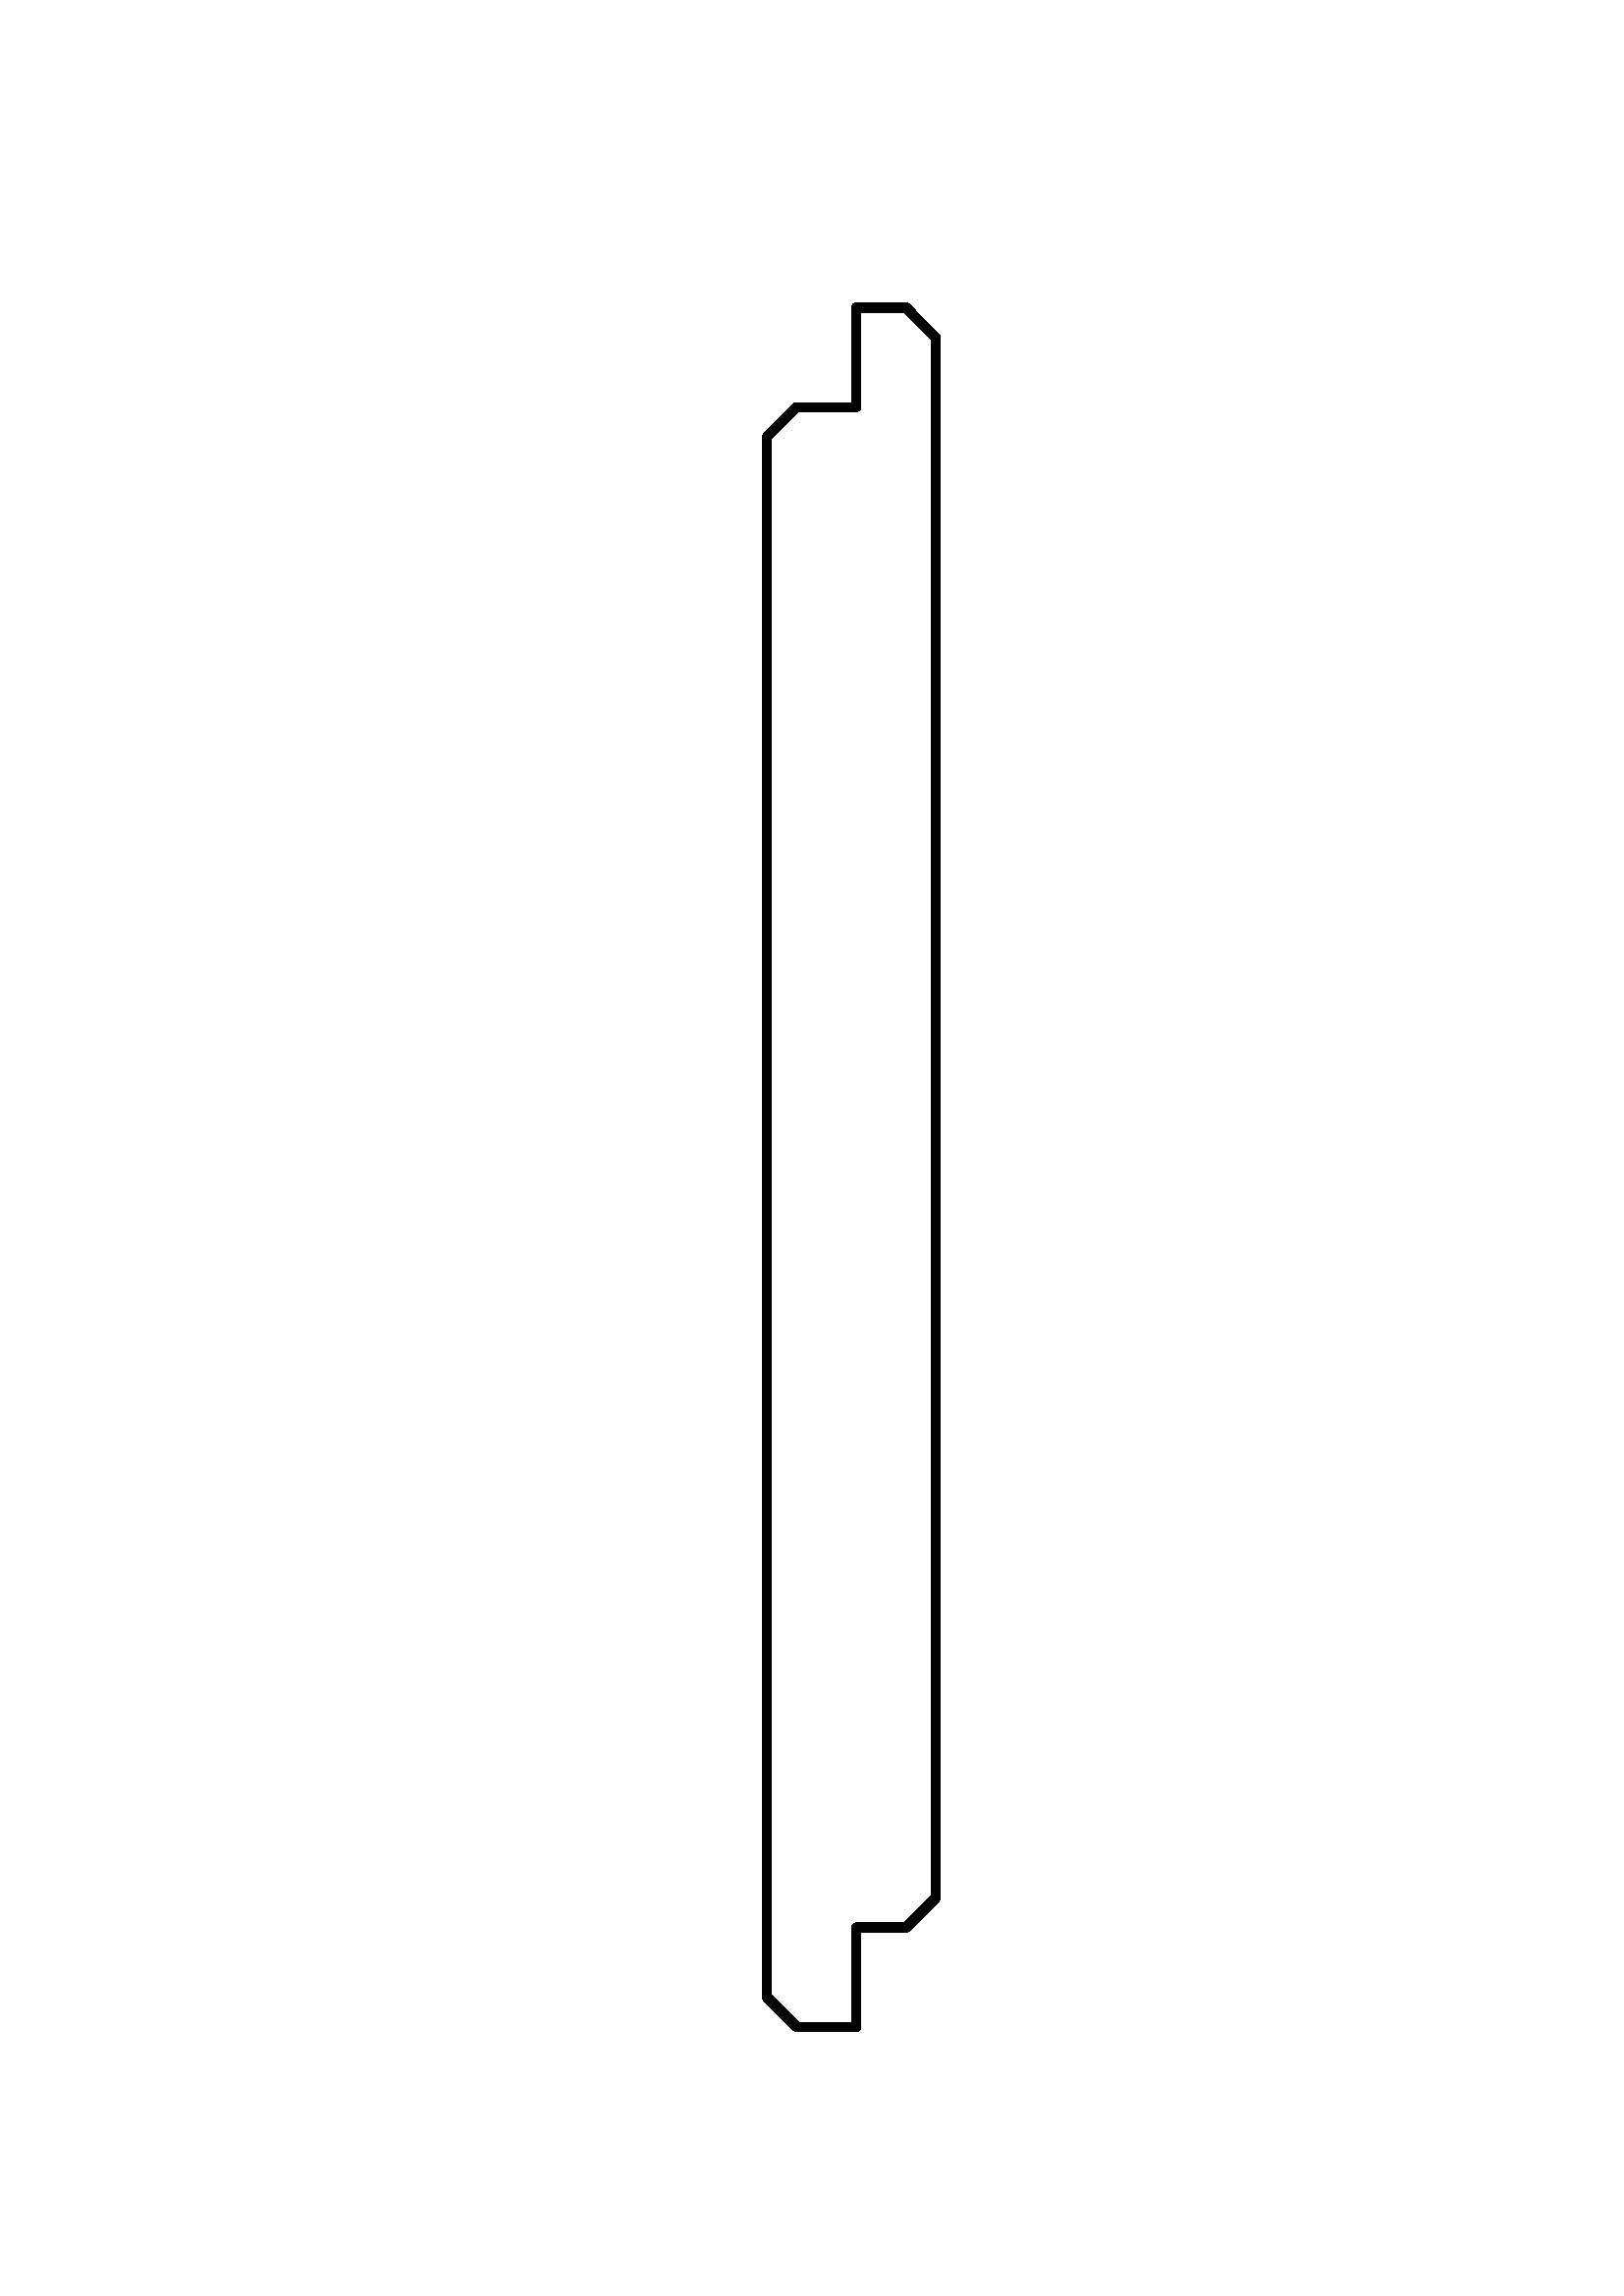 Douglas wisselsponning 1.7x17.5x500cm KD gedroogd 1 zijde glad 1 zijde ruw